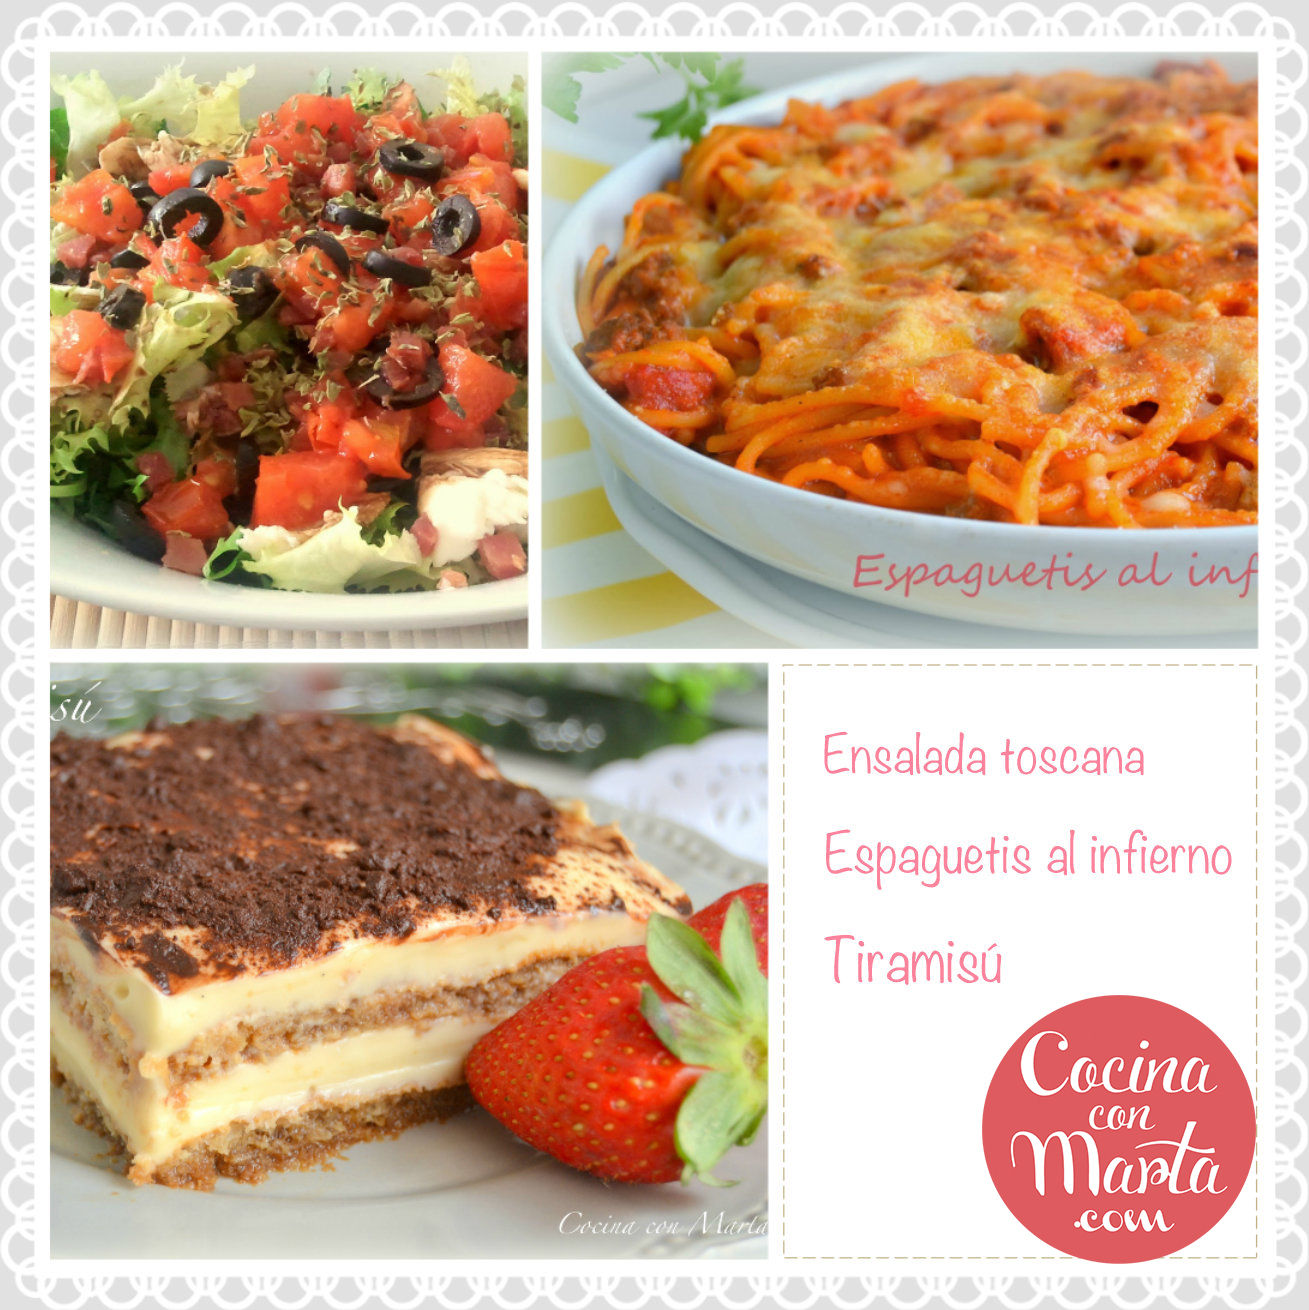 menú del día, cocina con marta, qué comer, que como hoy, espaguetis, ensalada, tiramisú, niños, comida italiana